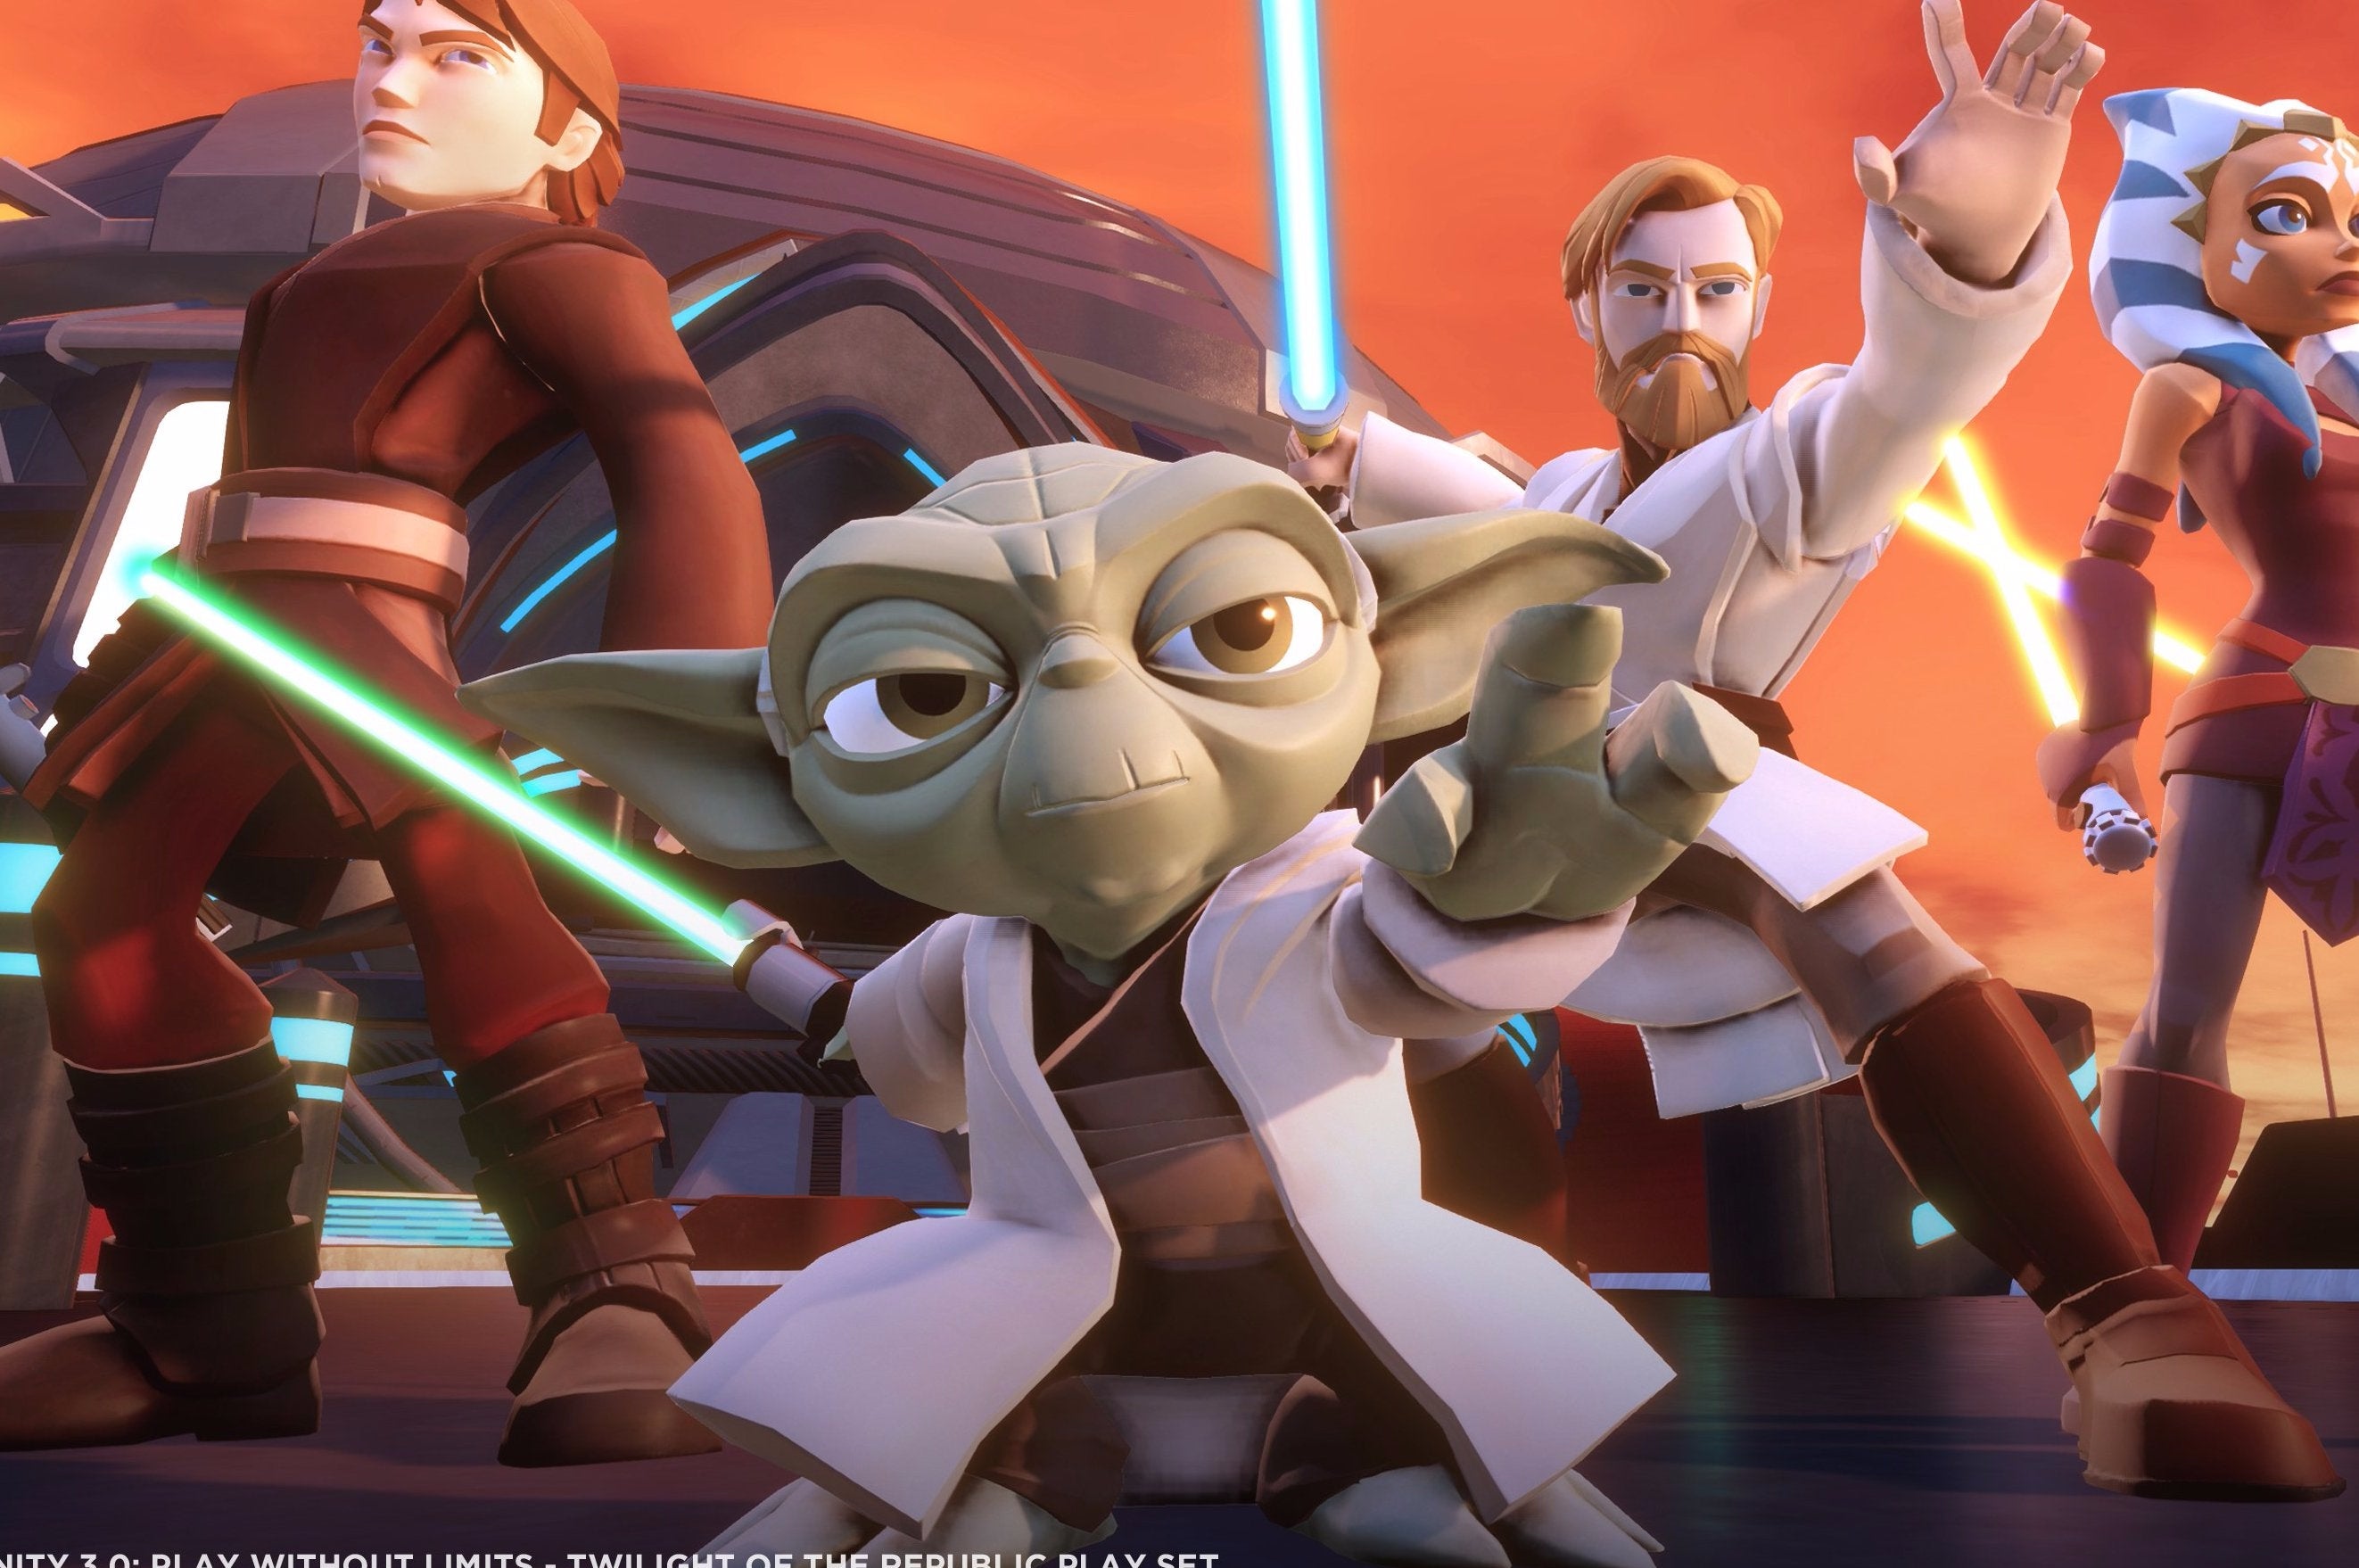 Afbeeldingen van Disney Infinity 3.0: Star Wars Rebels-personages aangekondigd